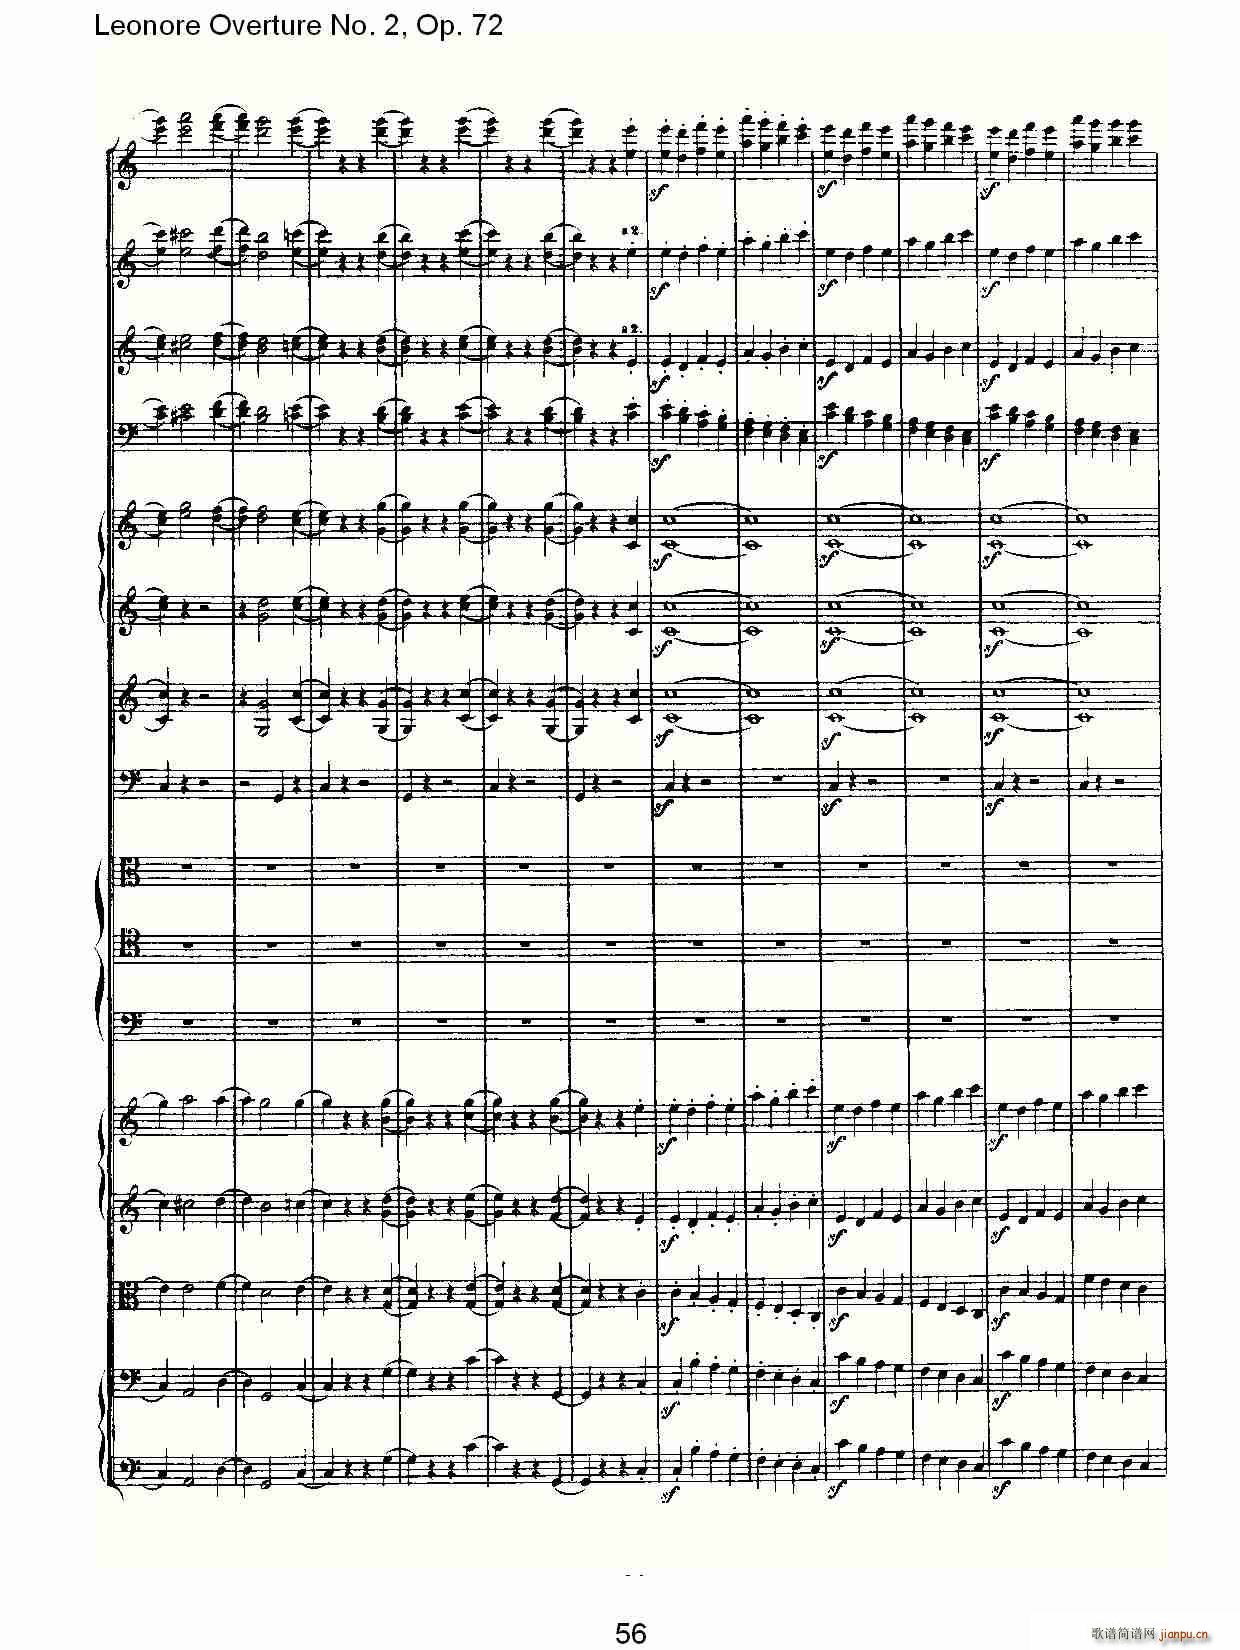 Leonore Overture No. 2Op. 72(ʮּ)9